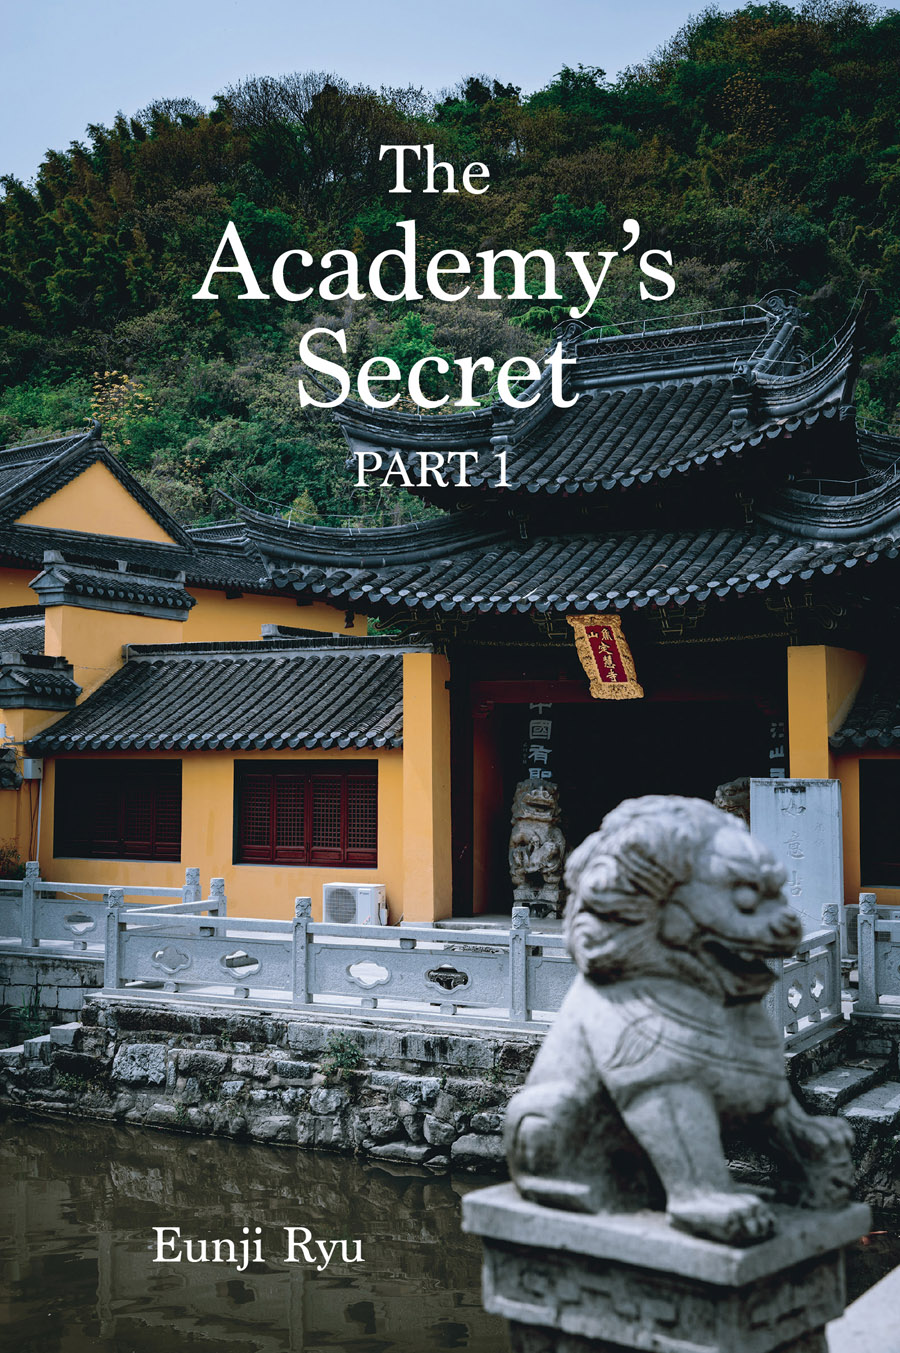 The Academy's Secret: Part 1